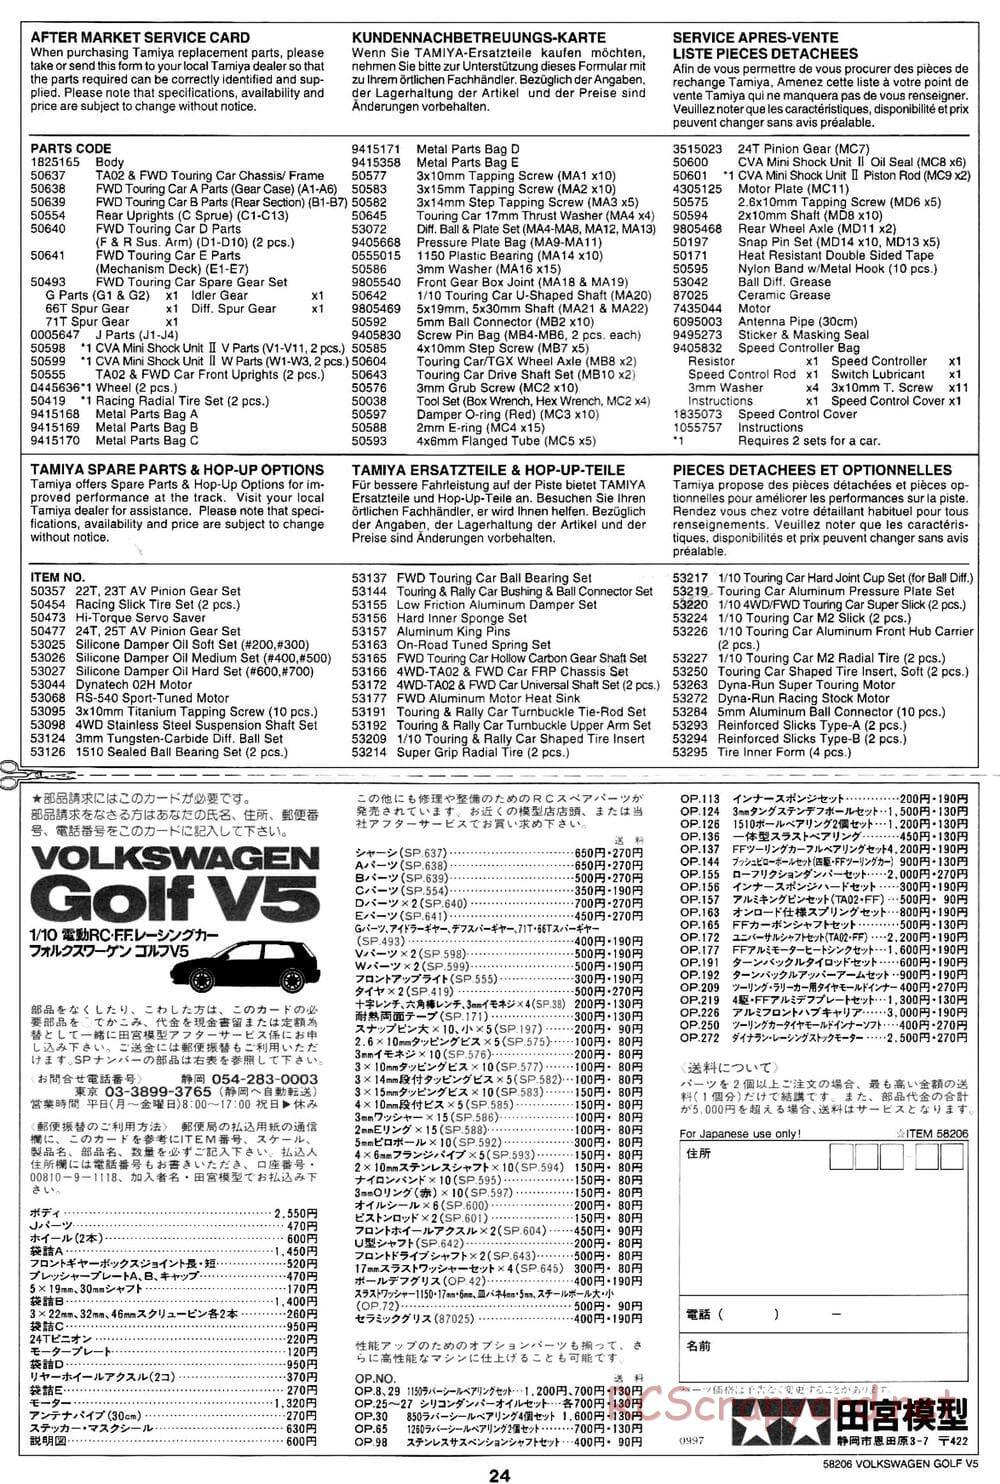 Tamiya - Volkswagen Golf V5 - FF-01 Chassis - Manual - Page 24